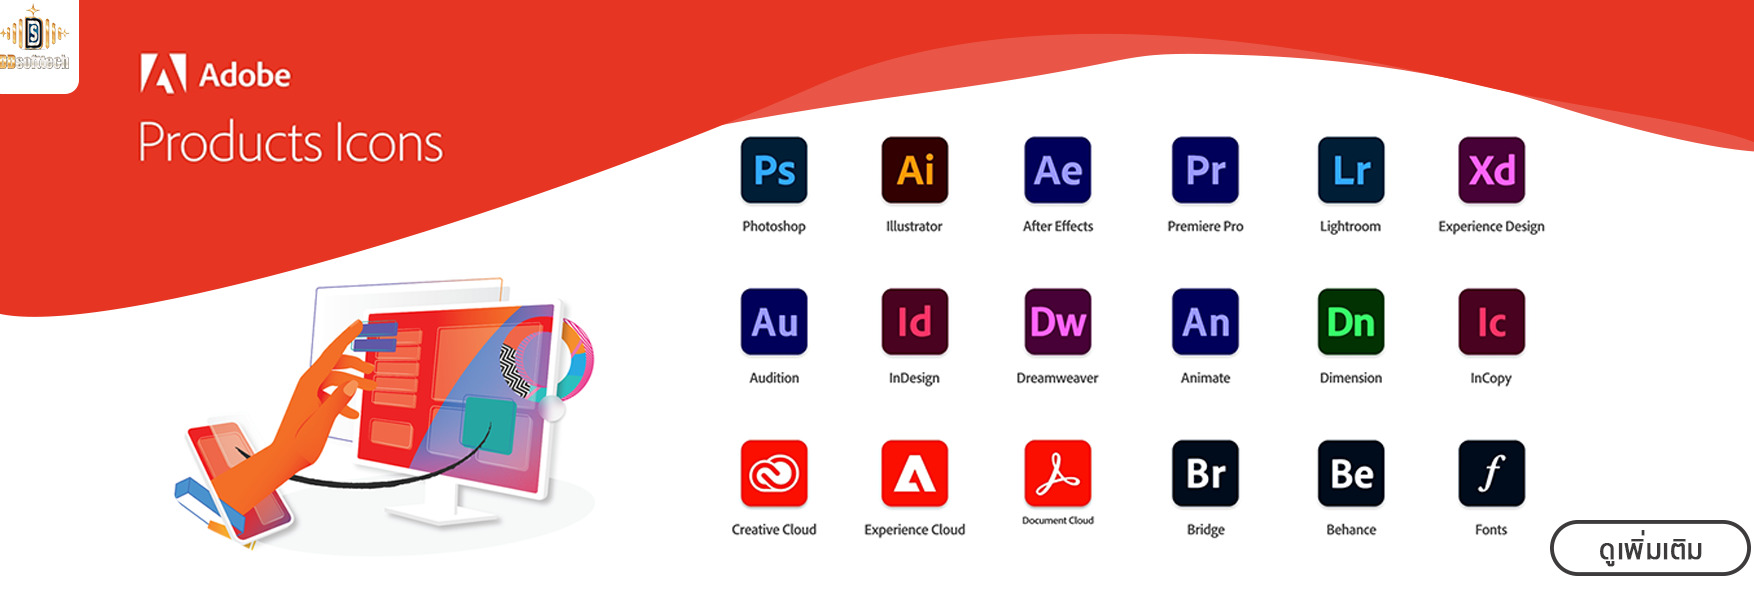 โปรแกรม Adobe Creative cloud ราคา